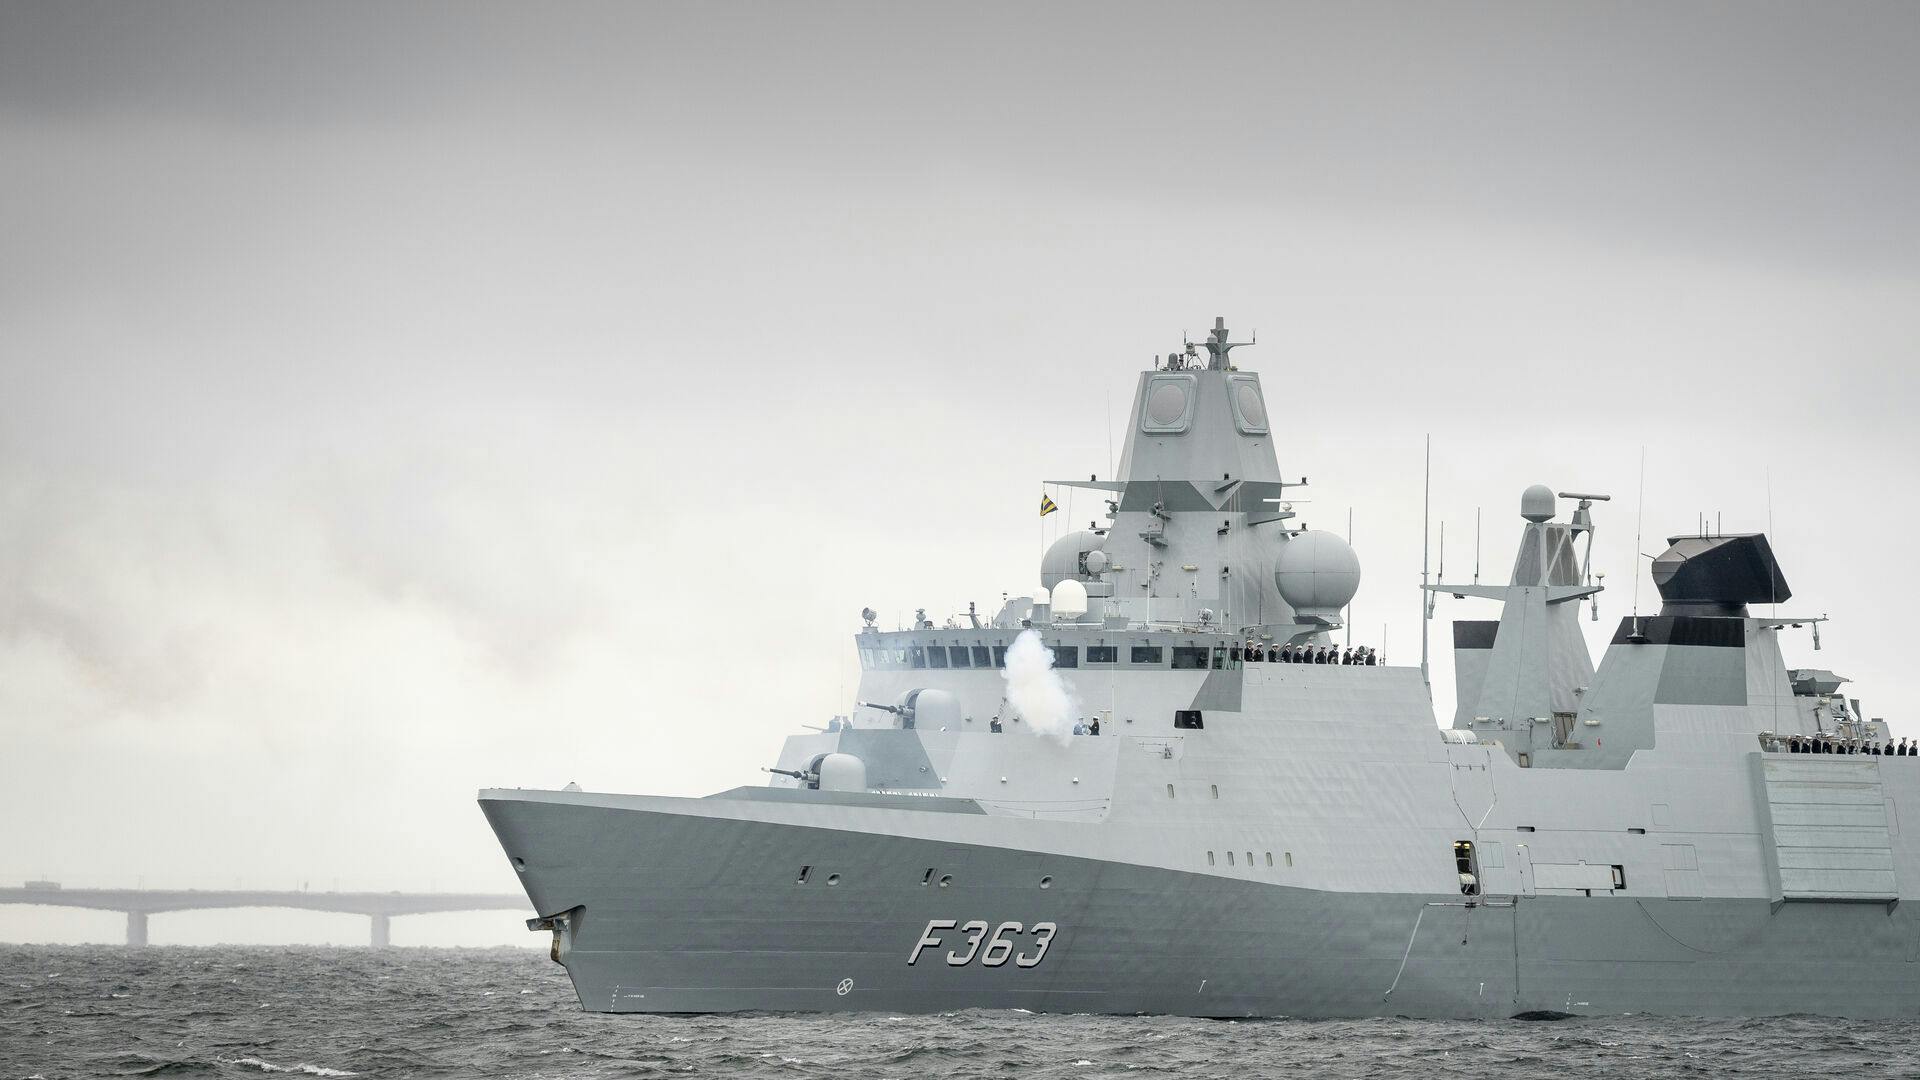 Forsvaret oplyser, at et missil på fregatten "Niels Juel" ikke kan deaktiveres. Det risikeres derfor at blive affyret utilsigtet.